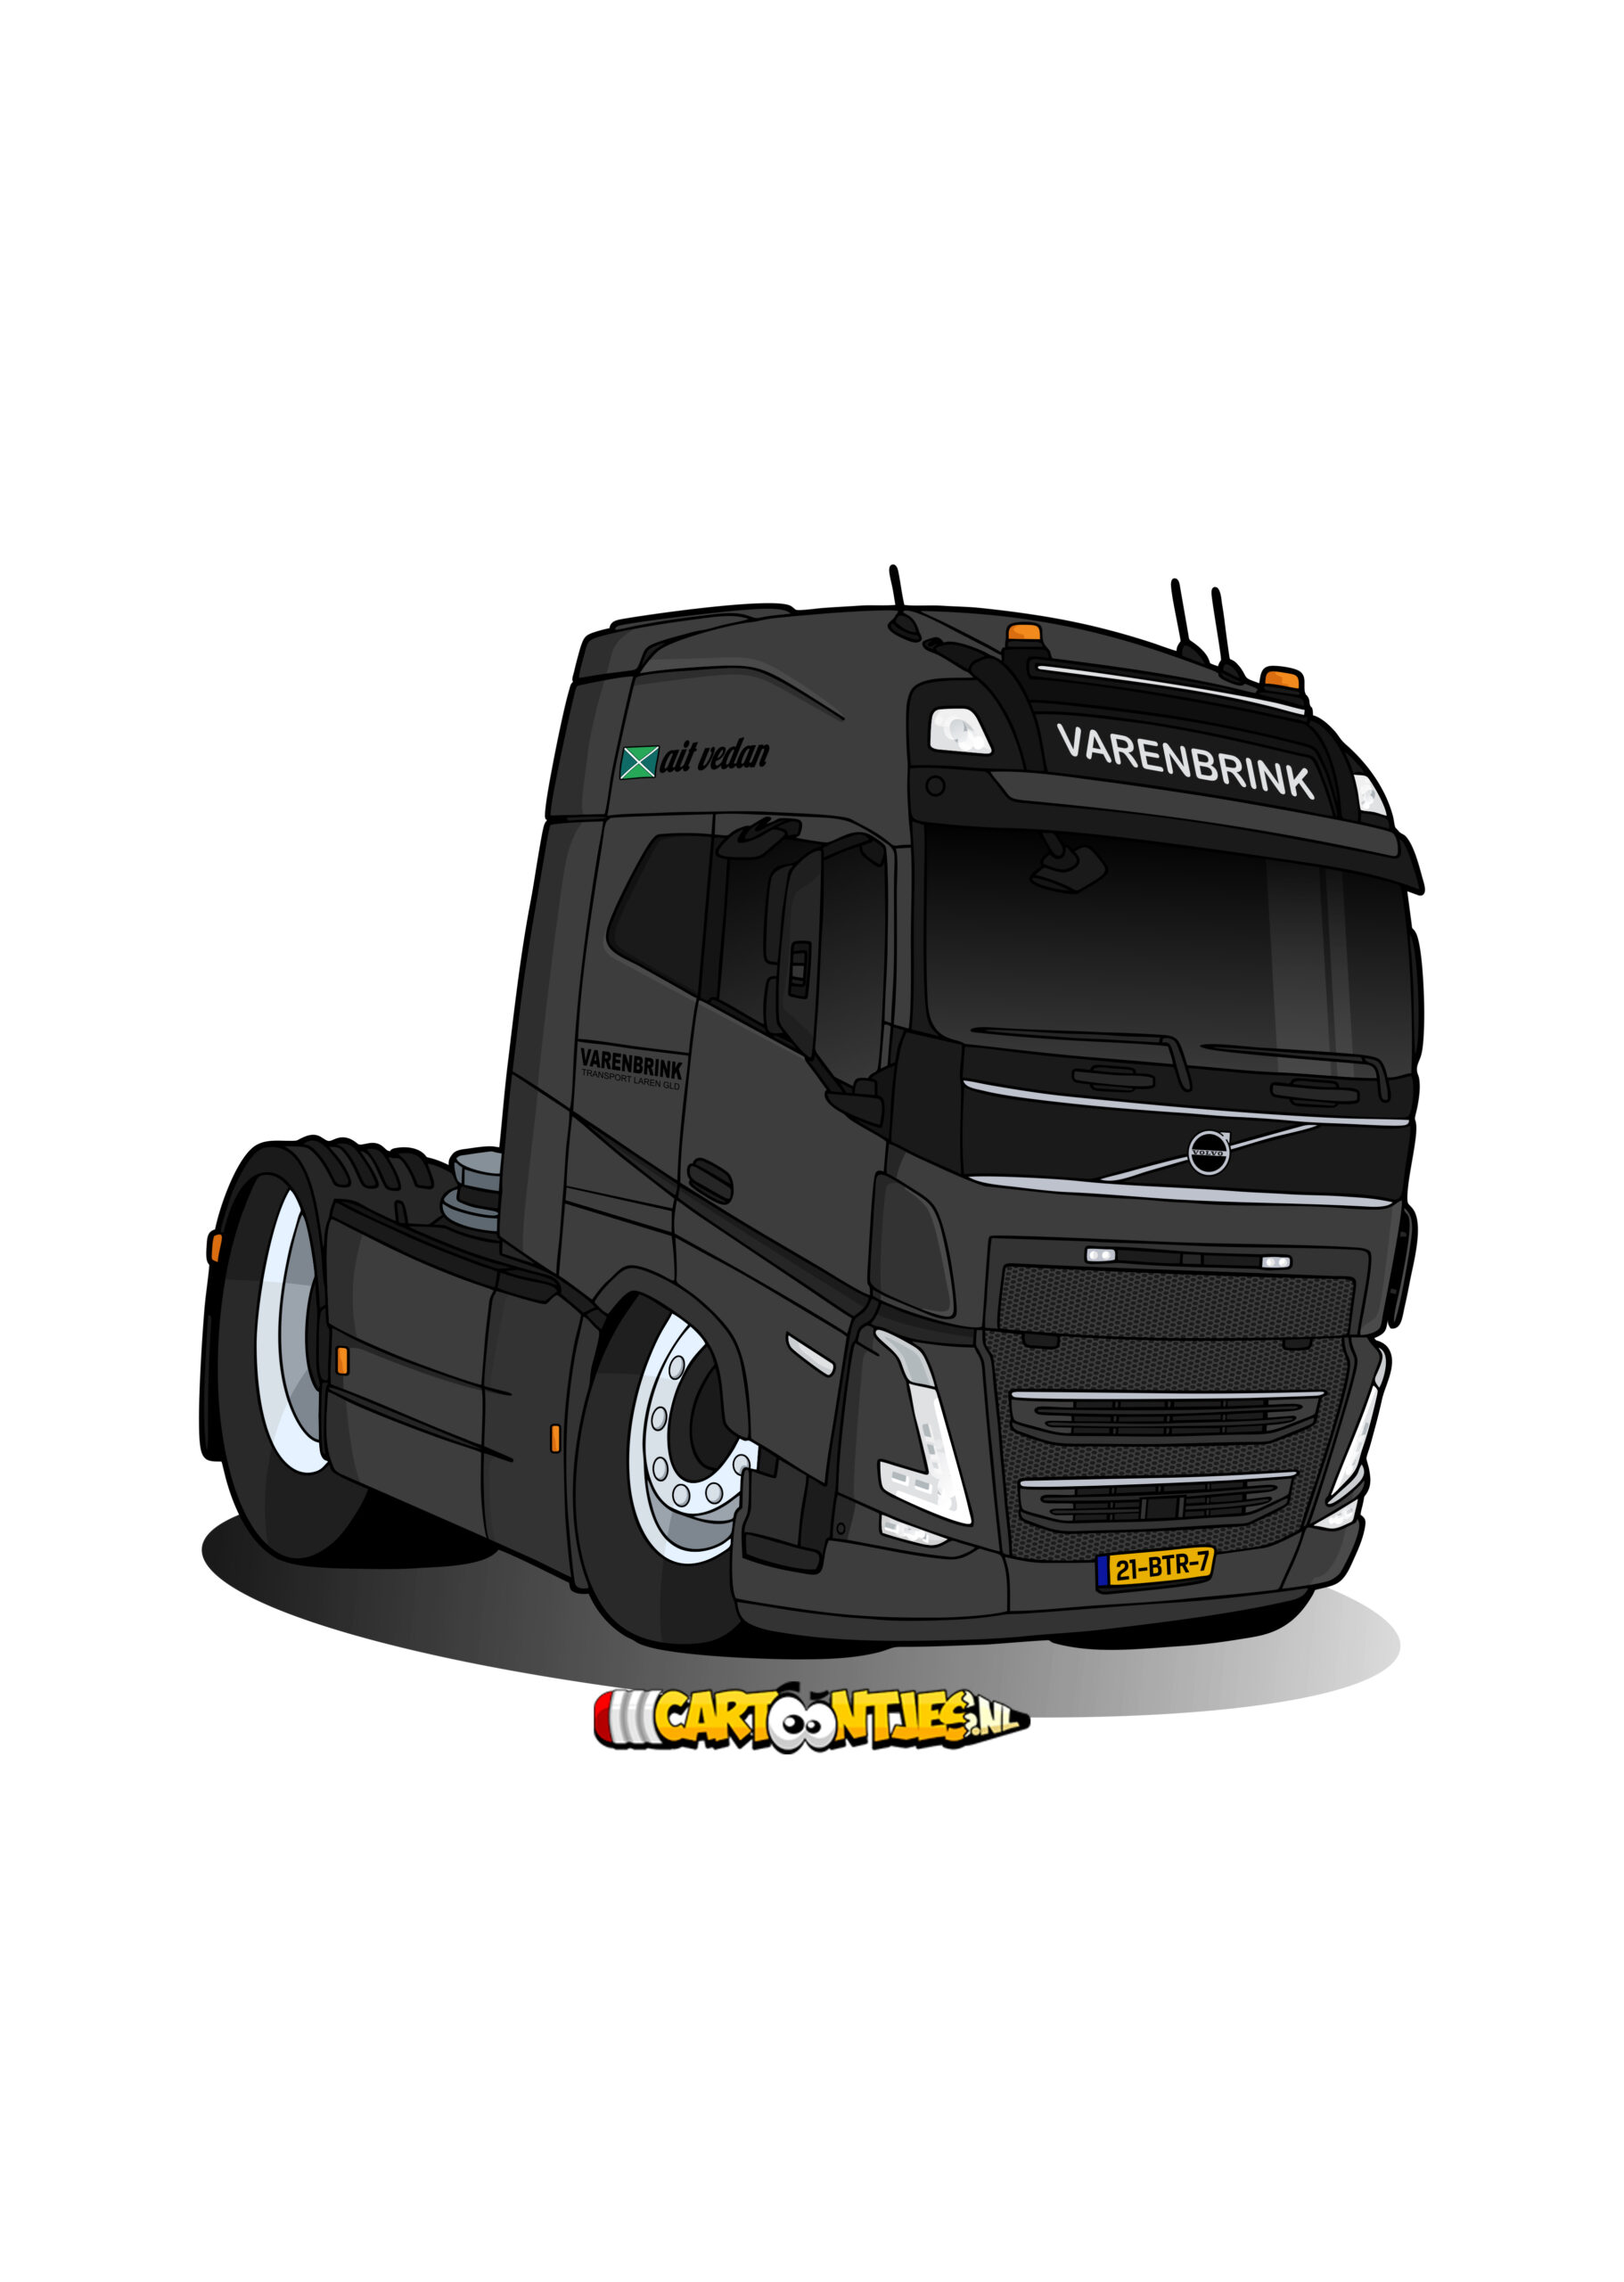 Truck cartoon Varenbrink transport